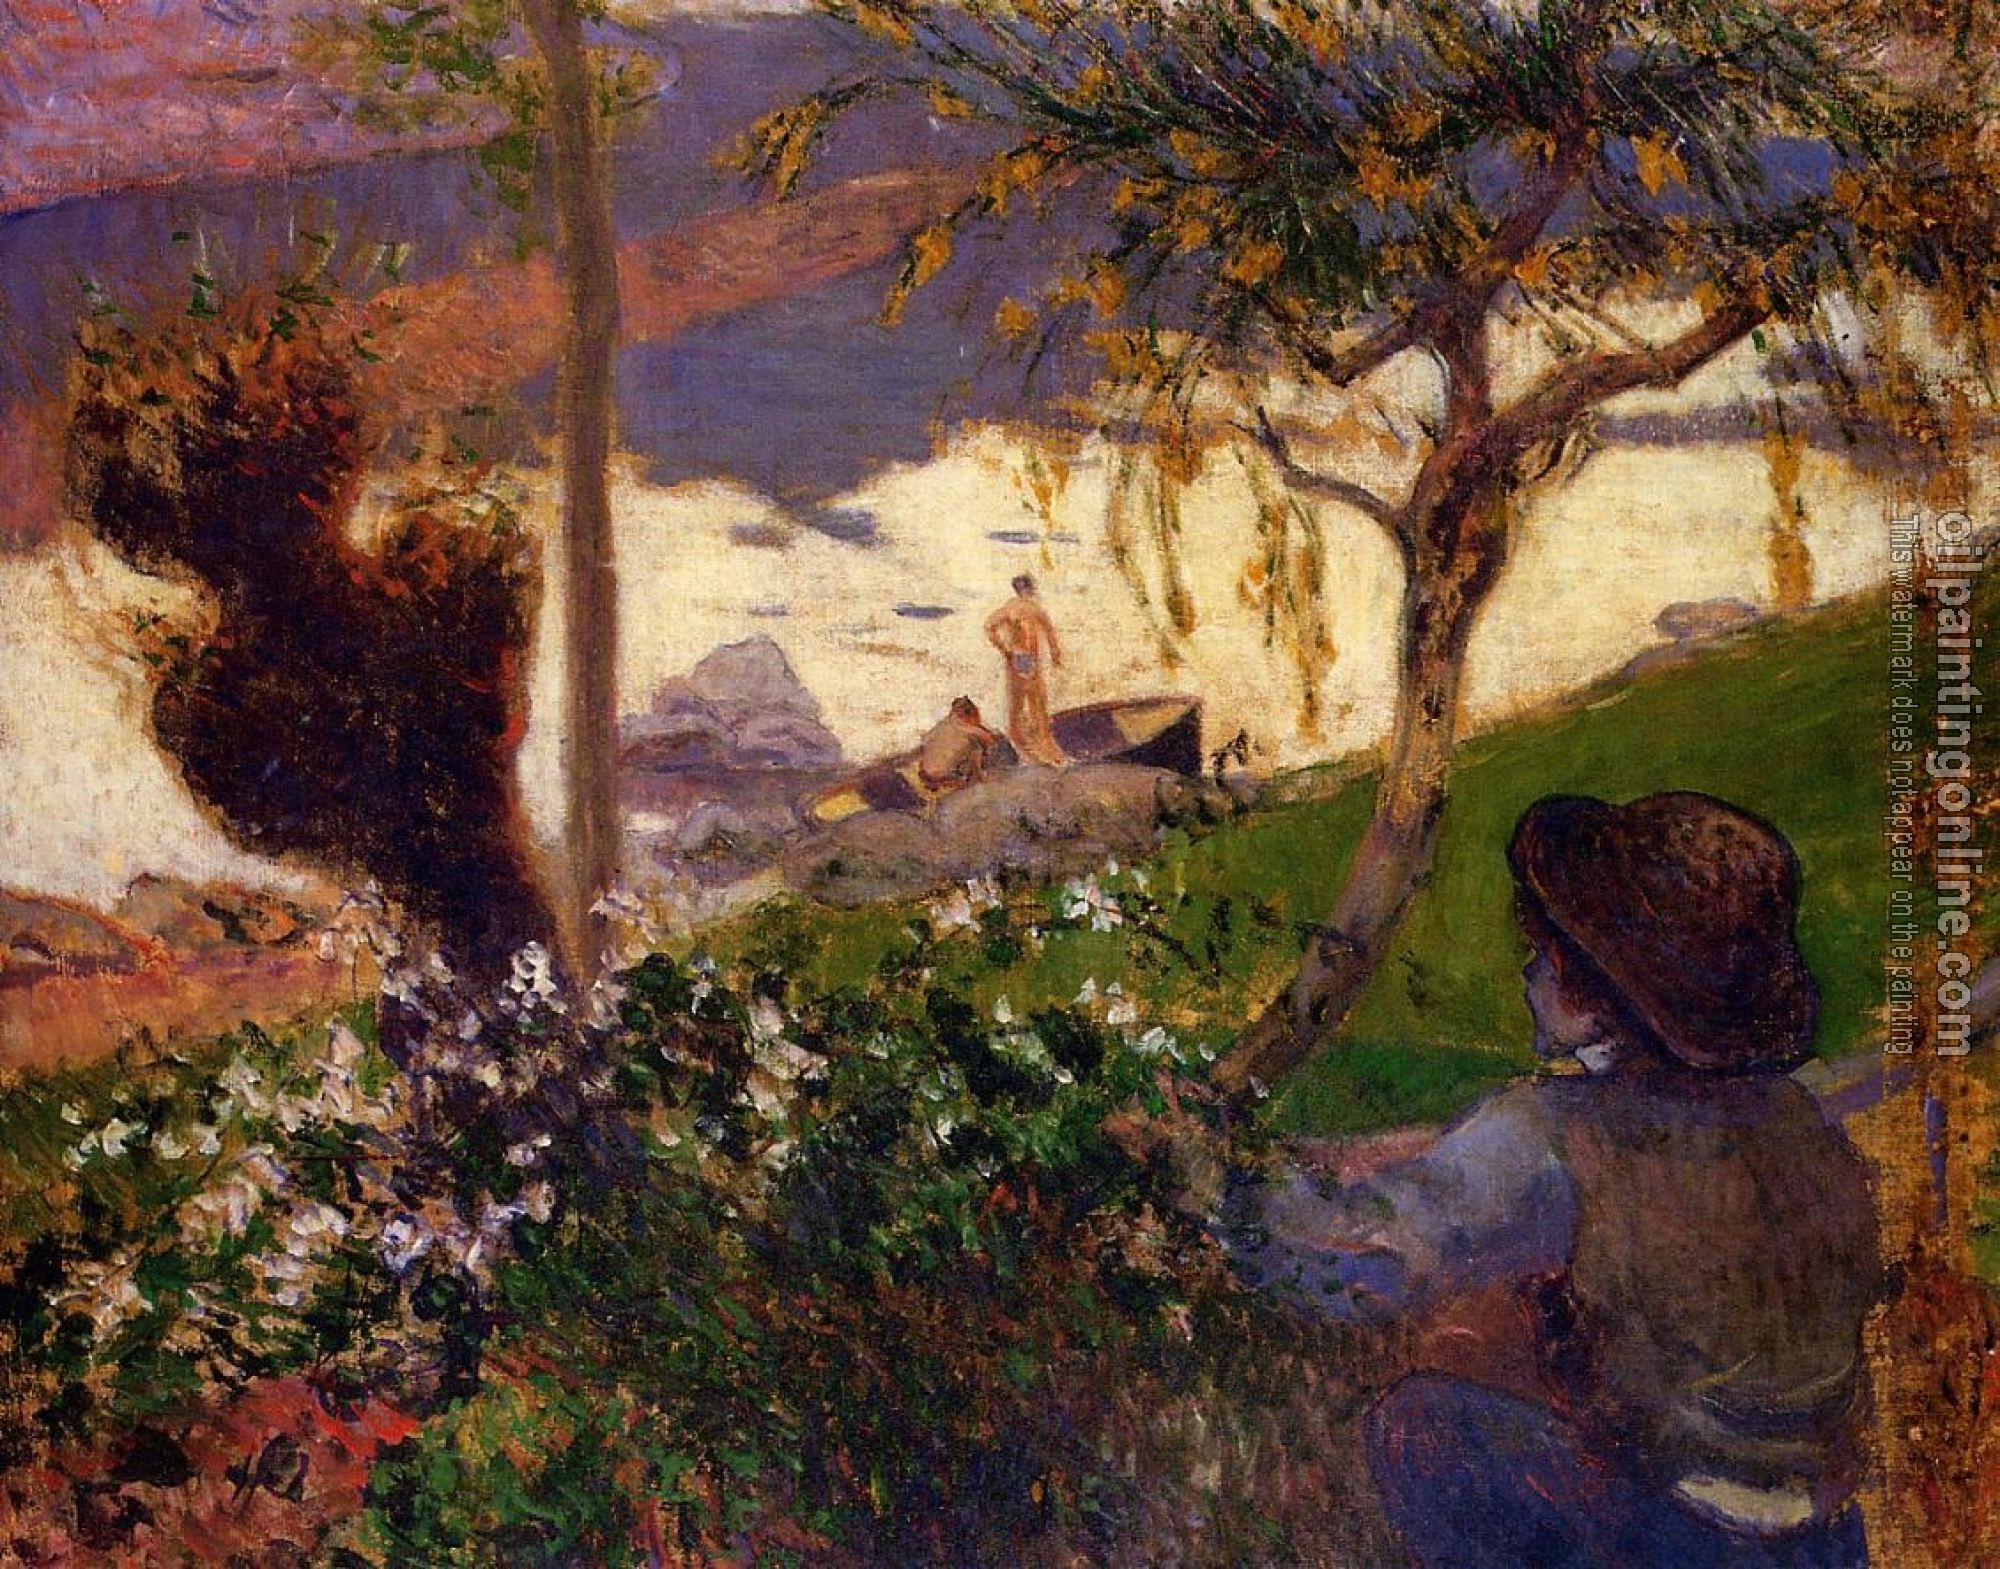 Gauguin, Paul - Breton Boy by the Aven River